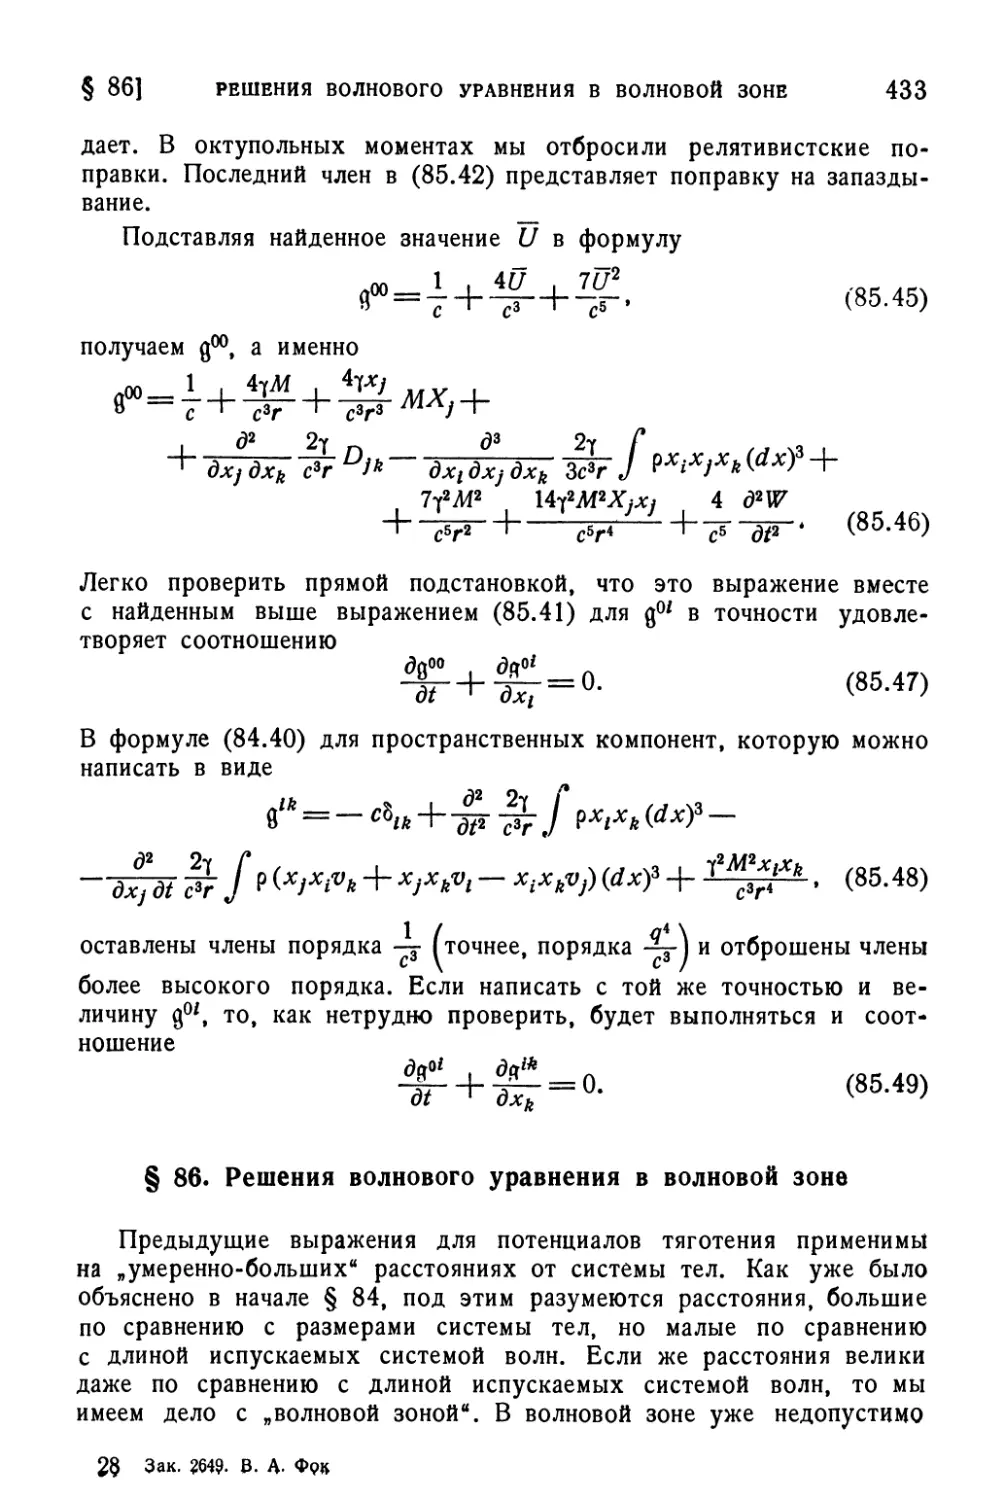 § 86. Решения волнового уравнения в волновой зоне